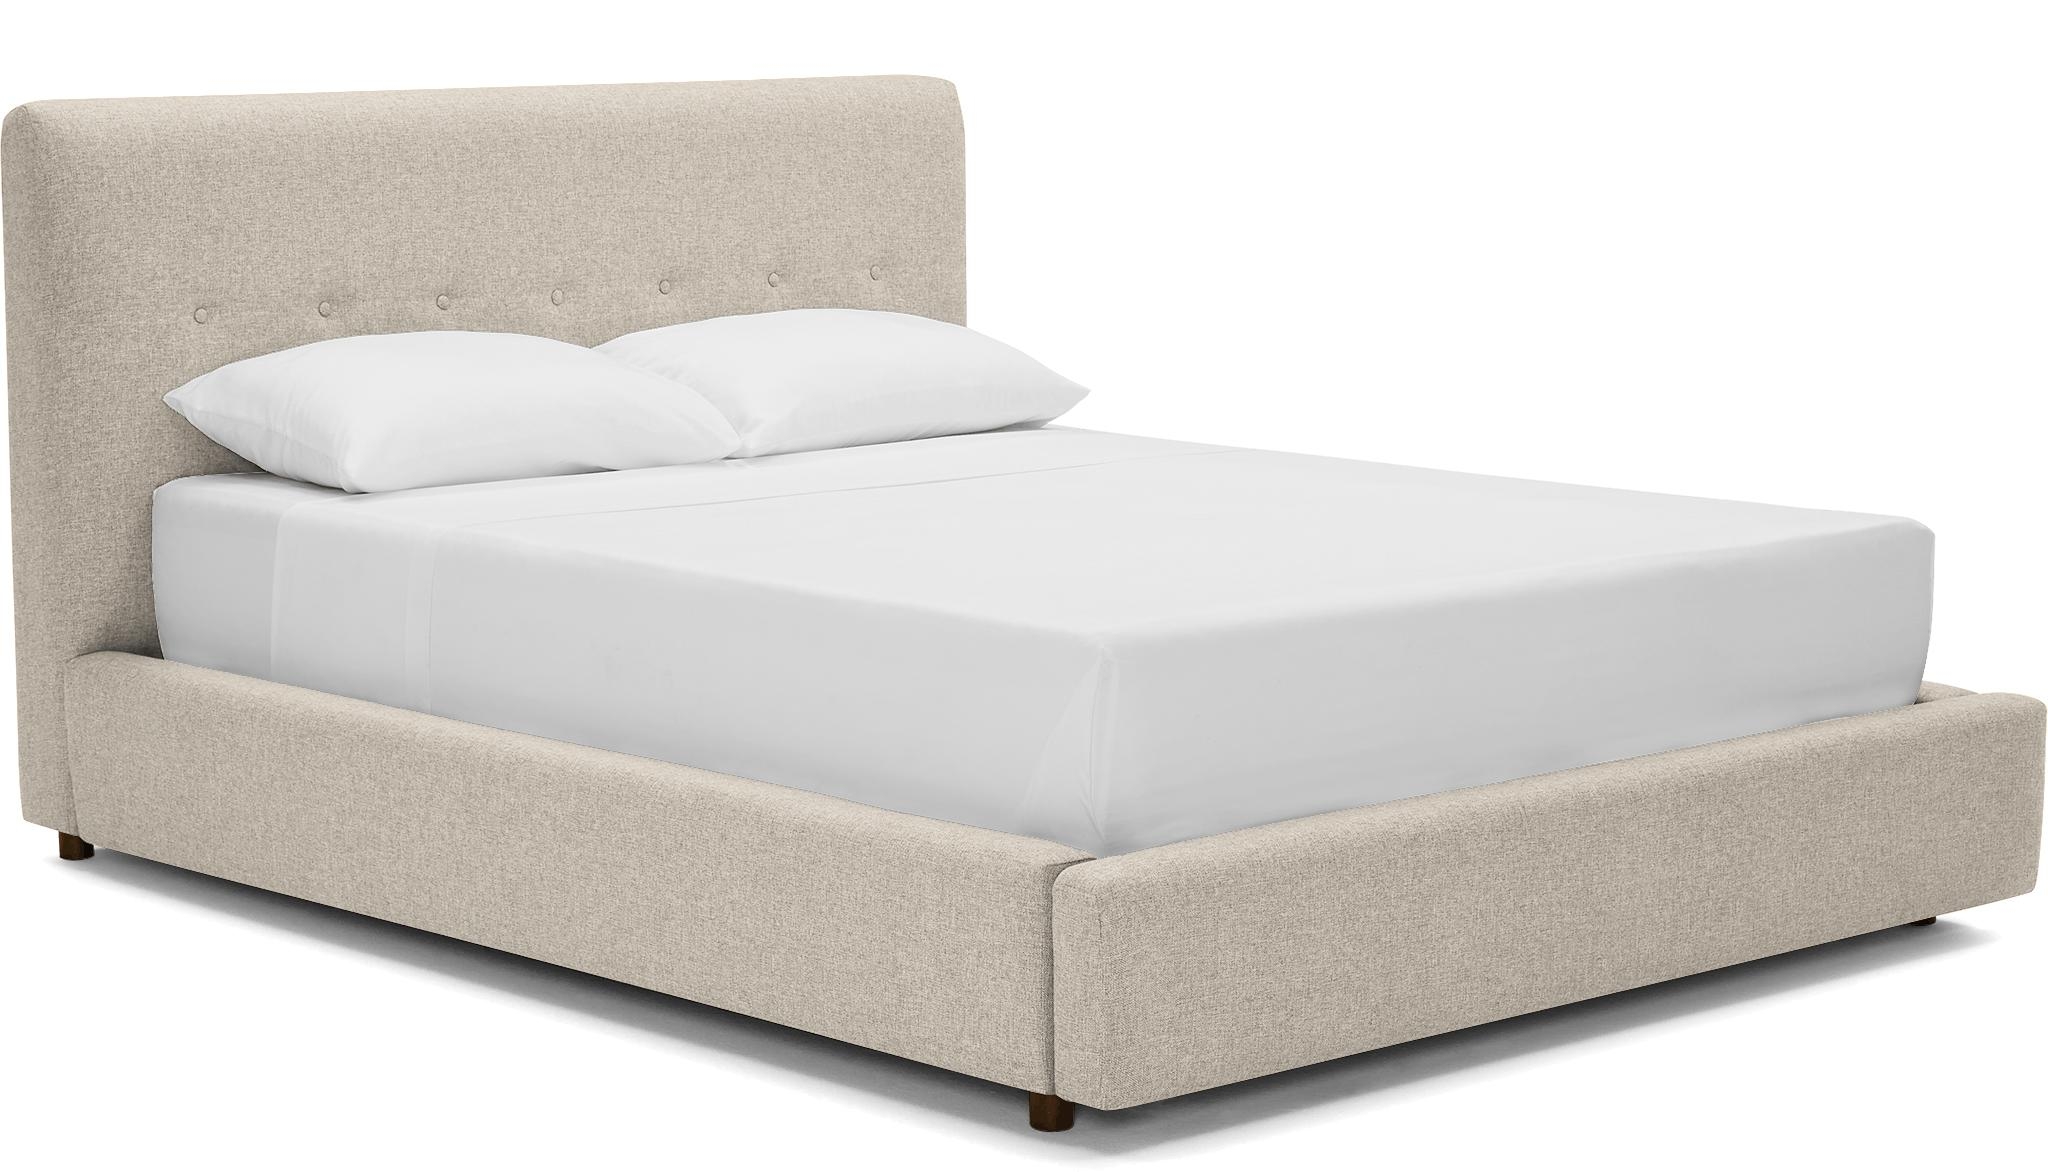 Beige/White Alvin Mid Century Modern Storage Bed - Cody Sandstone - Mocha - Queen - Image 1